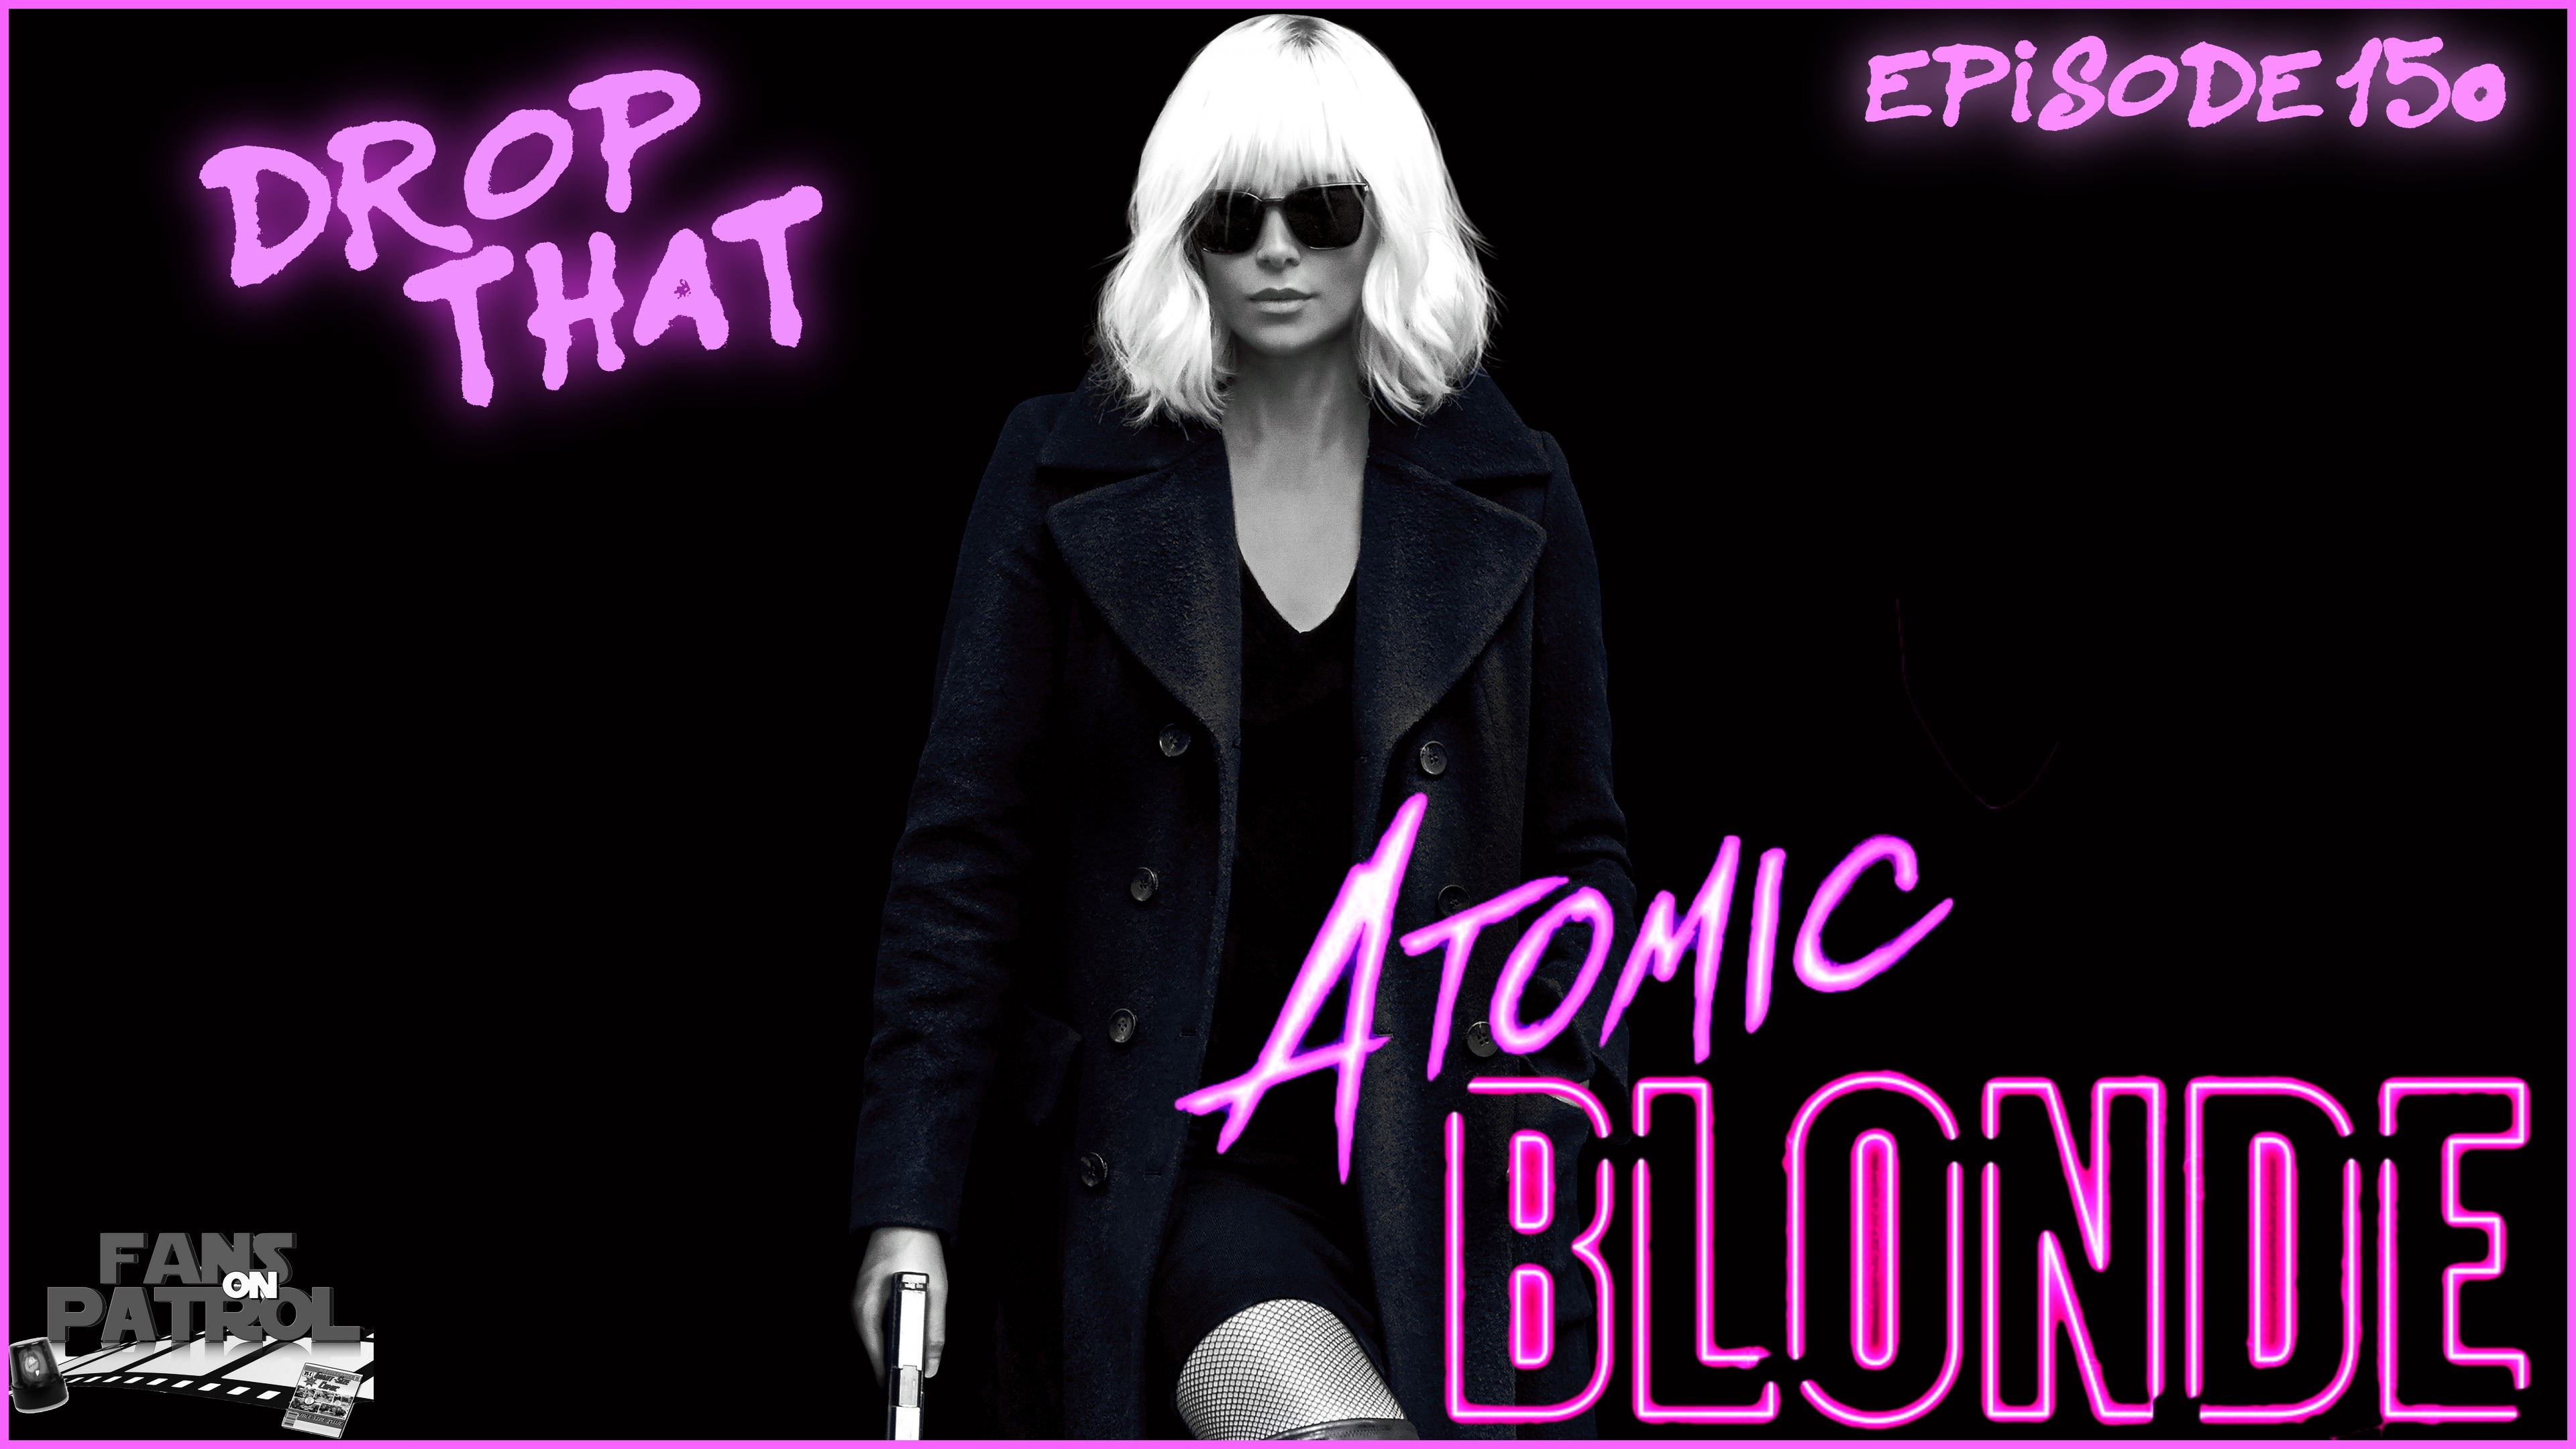 Drop That Atomic Blonde Episode 150